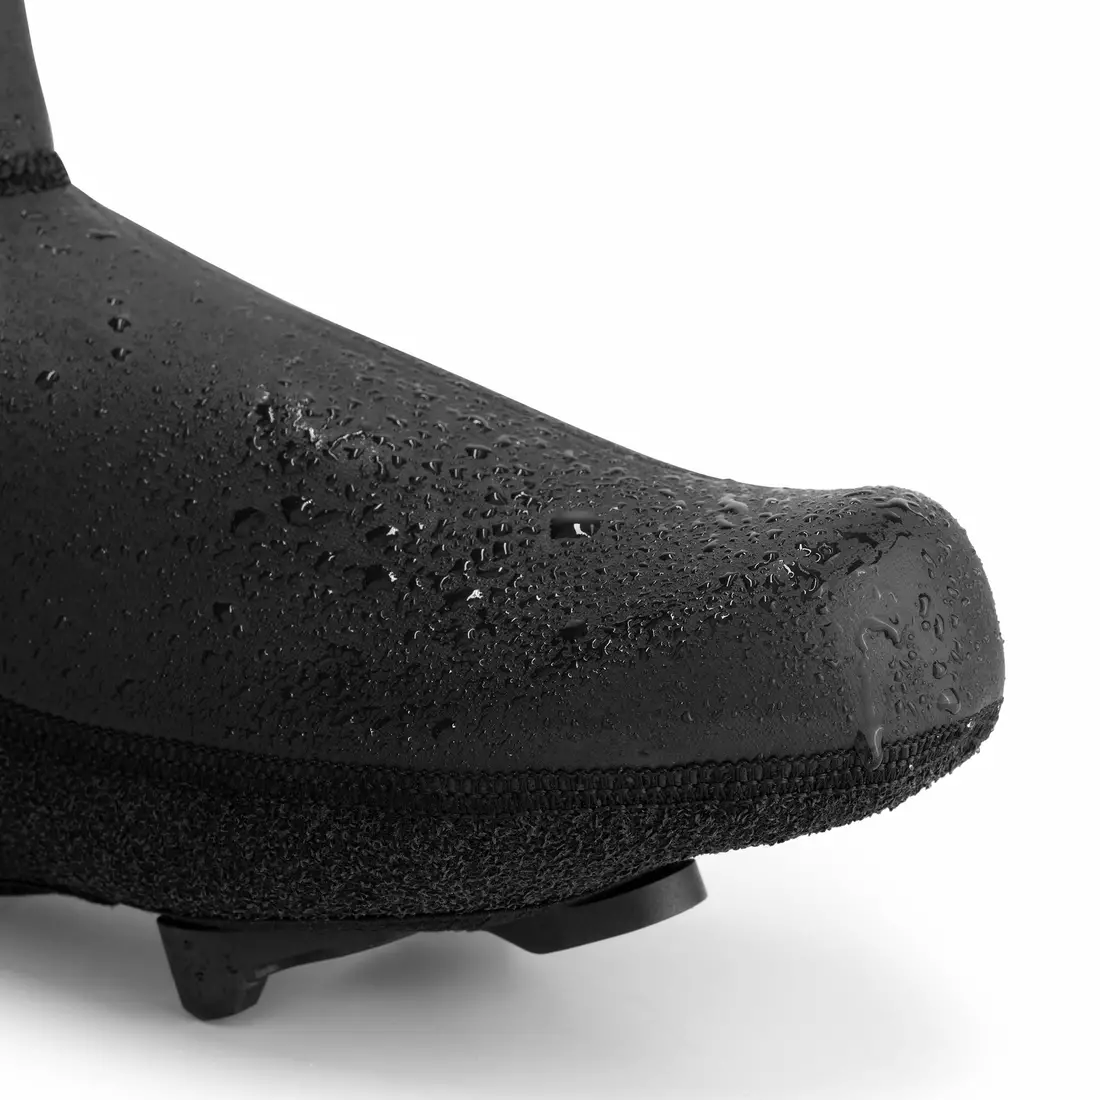 Rogelli ochraniacze na buty rowerowe ARTEC czarne